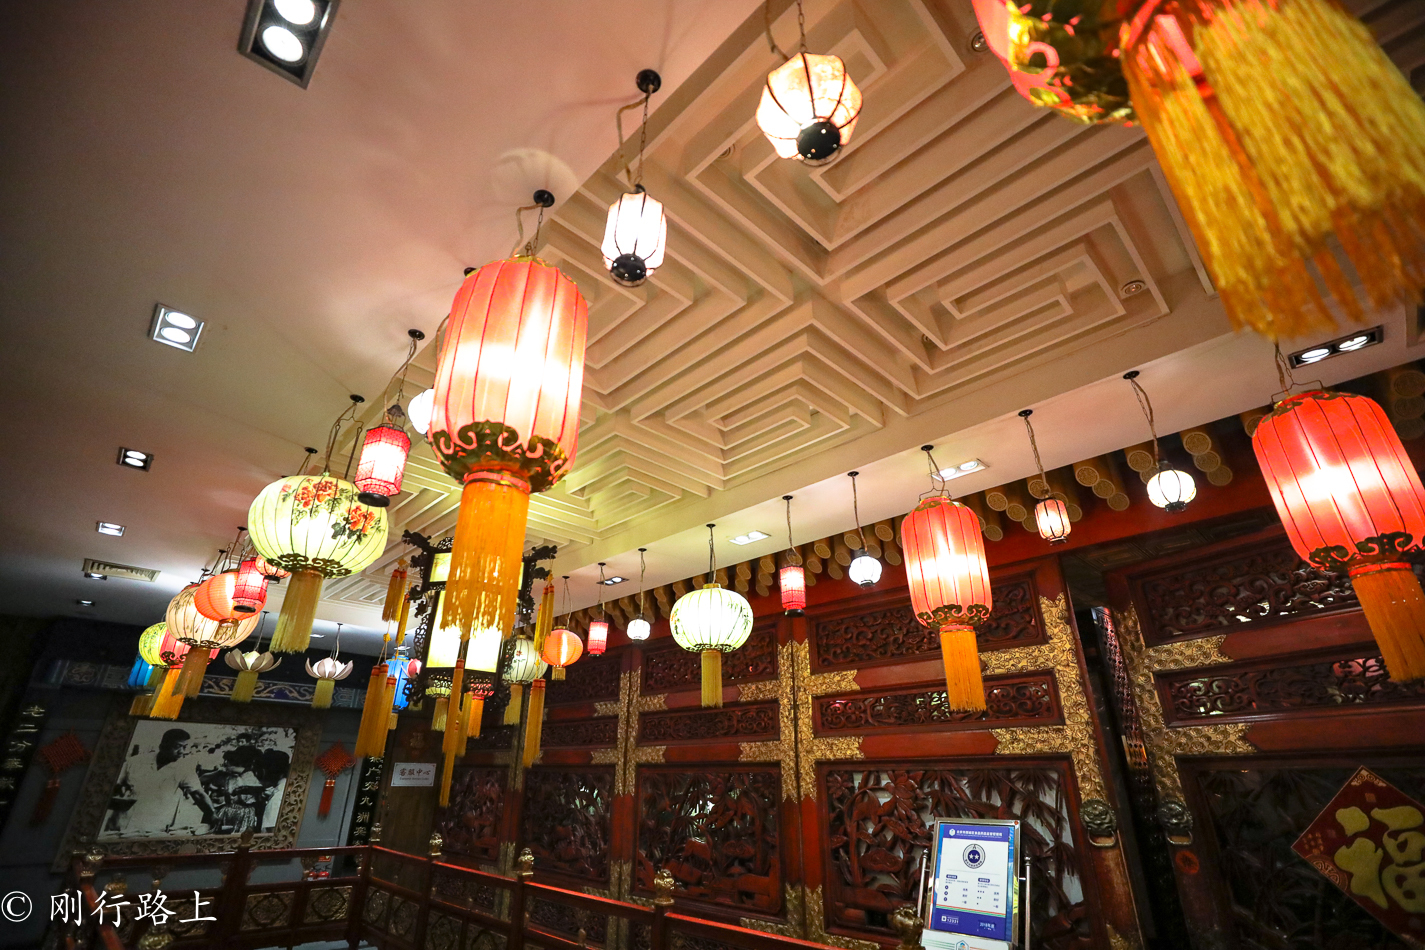 很多人到北京旅游,来老舍茶馆却是因为老舍这